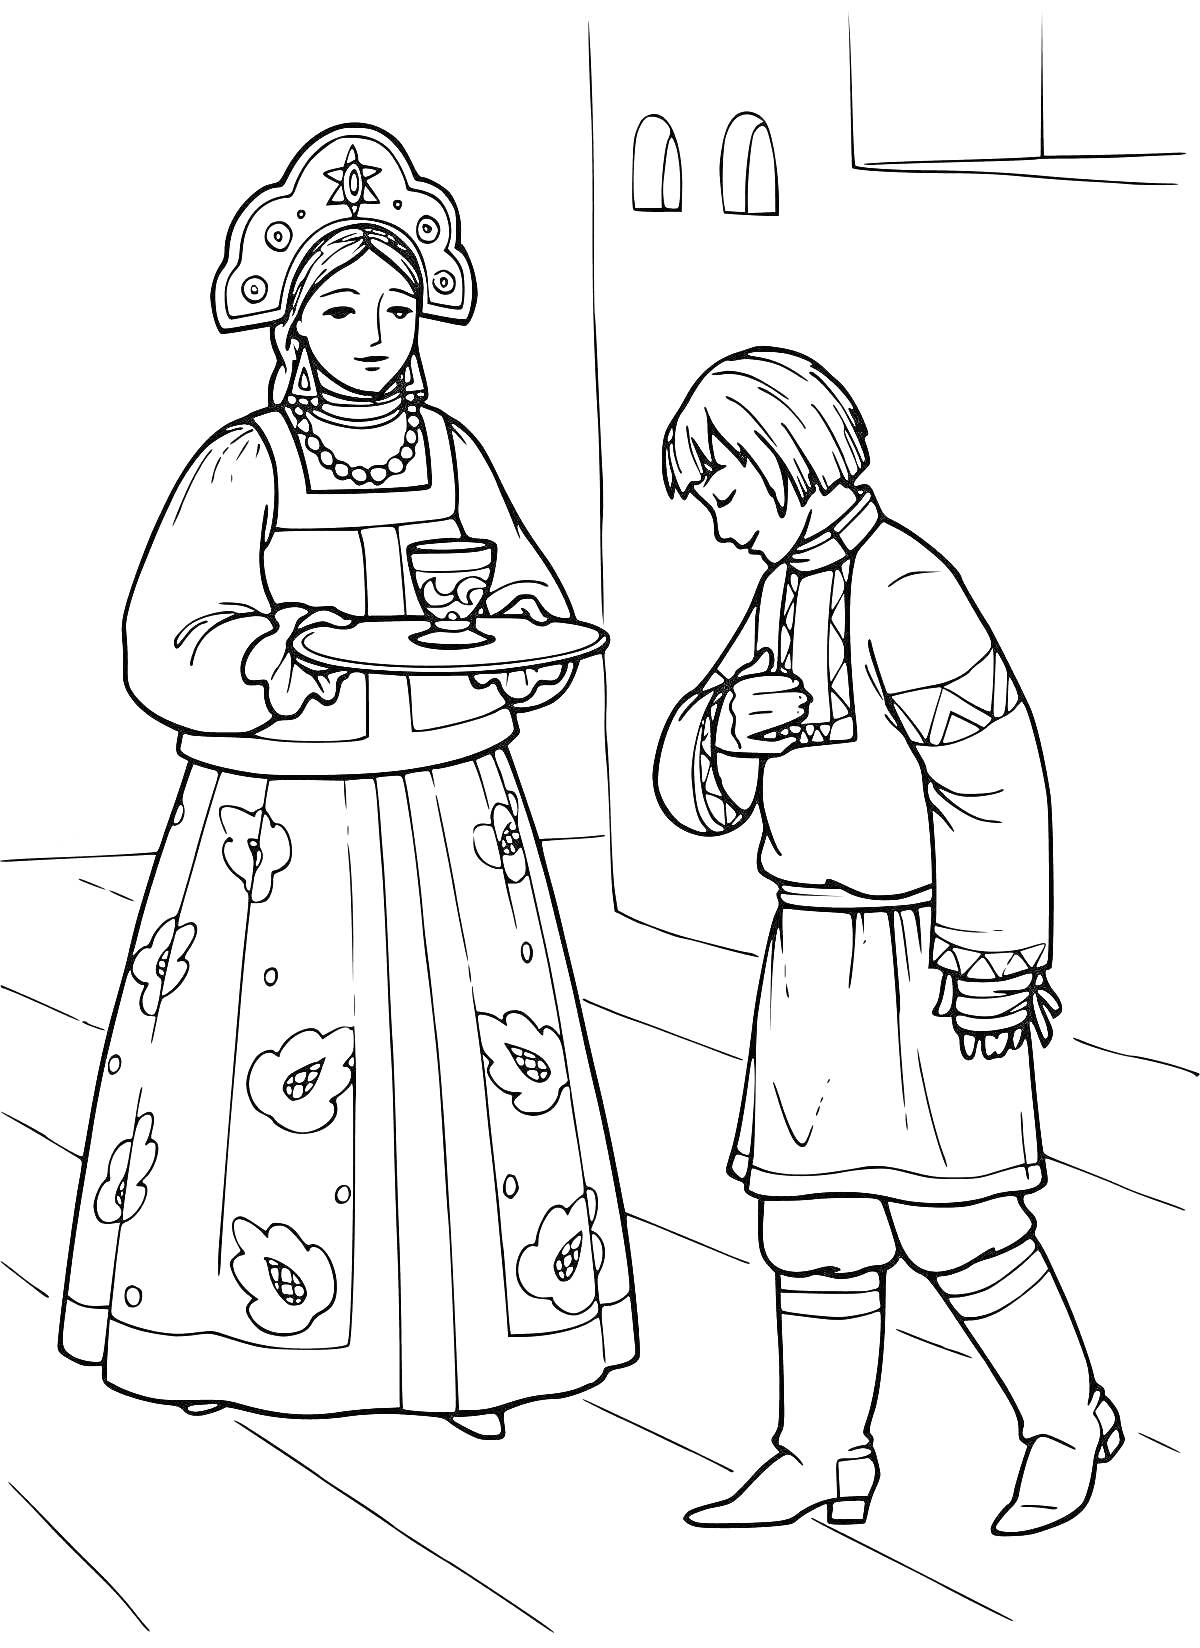 Раскраска Женщина в русском народном костюме с кокошником, держащая поднос с чашкой и блюдцем. Мужчина в косоворотке и сапогах с ремнём.